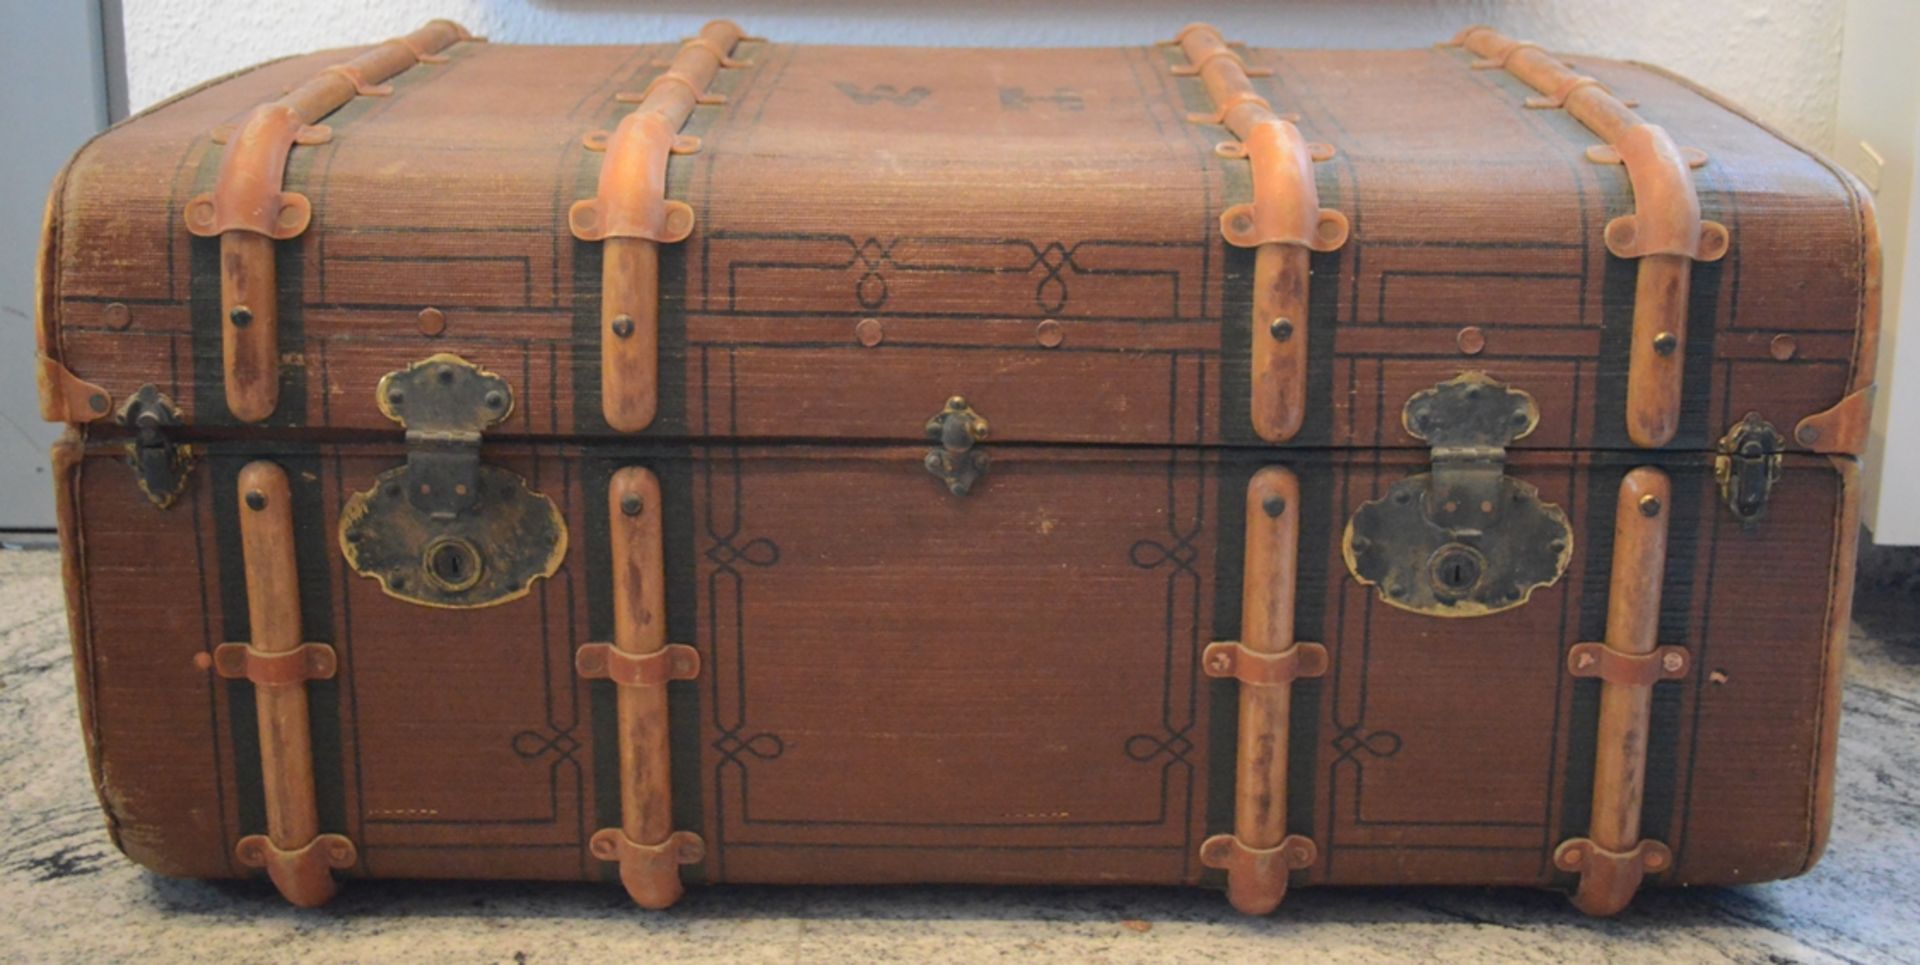 Reisekoffer, Rohr-Flachs-Platten-Koffer, rechteckiger Korpus mit Bugholzstreben, beidseitige - Image 2 of 2